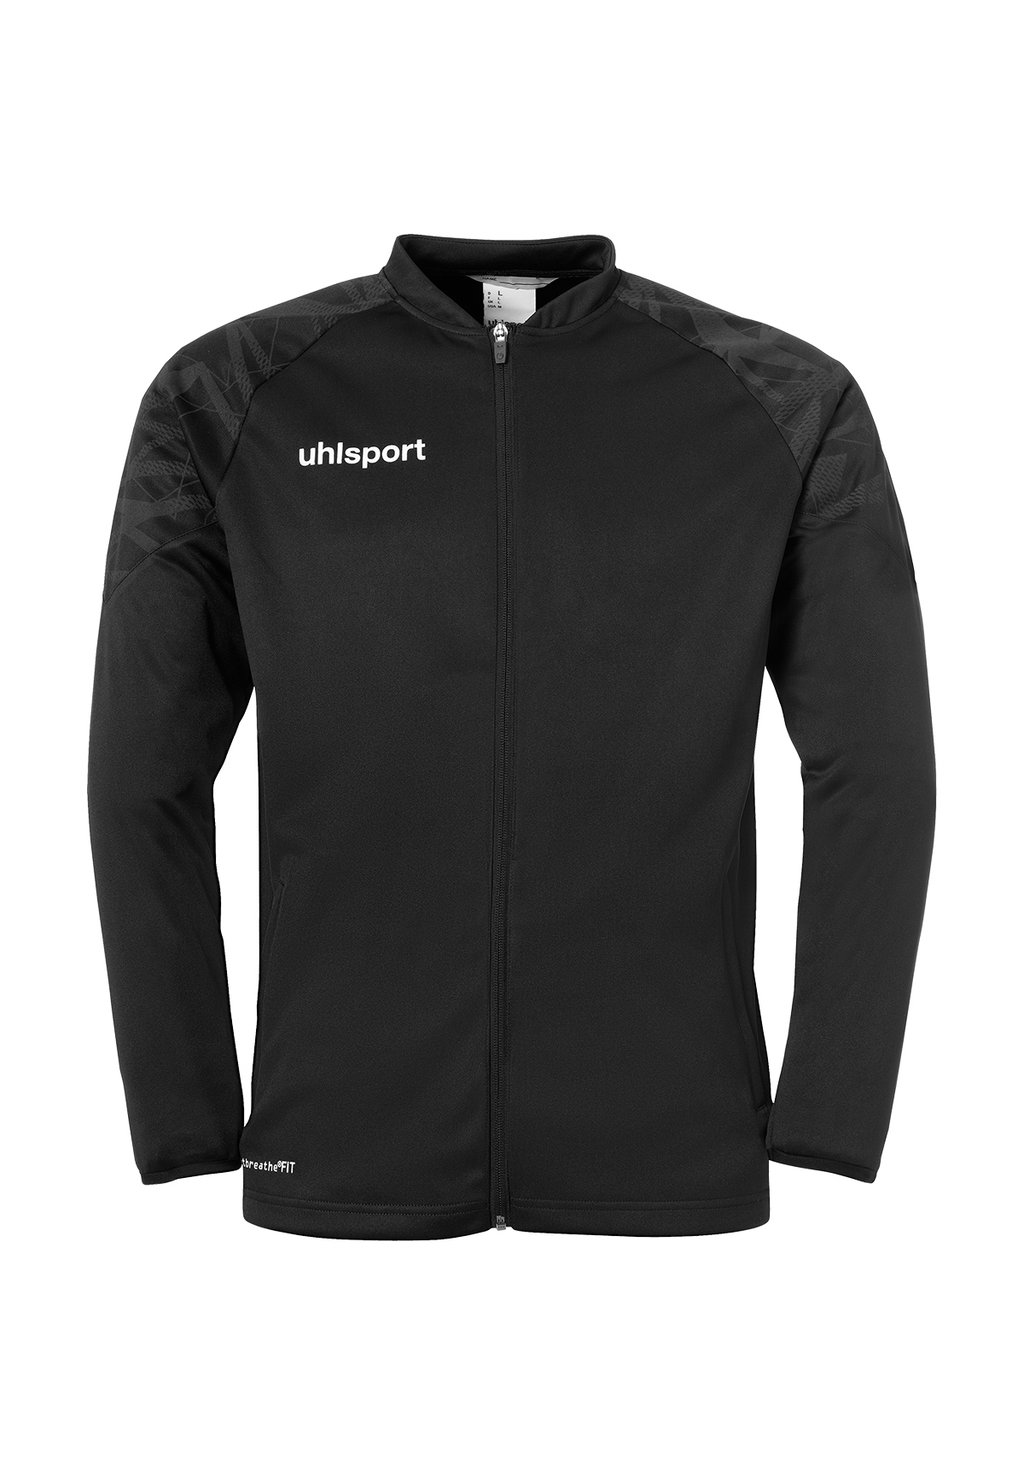 Тренировочная куртка GOAL uhlsport, цвет schwarz anthra